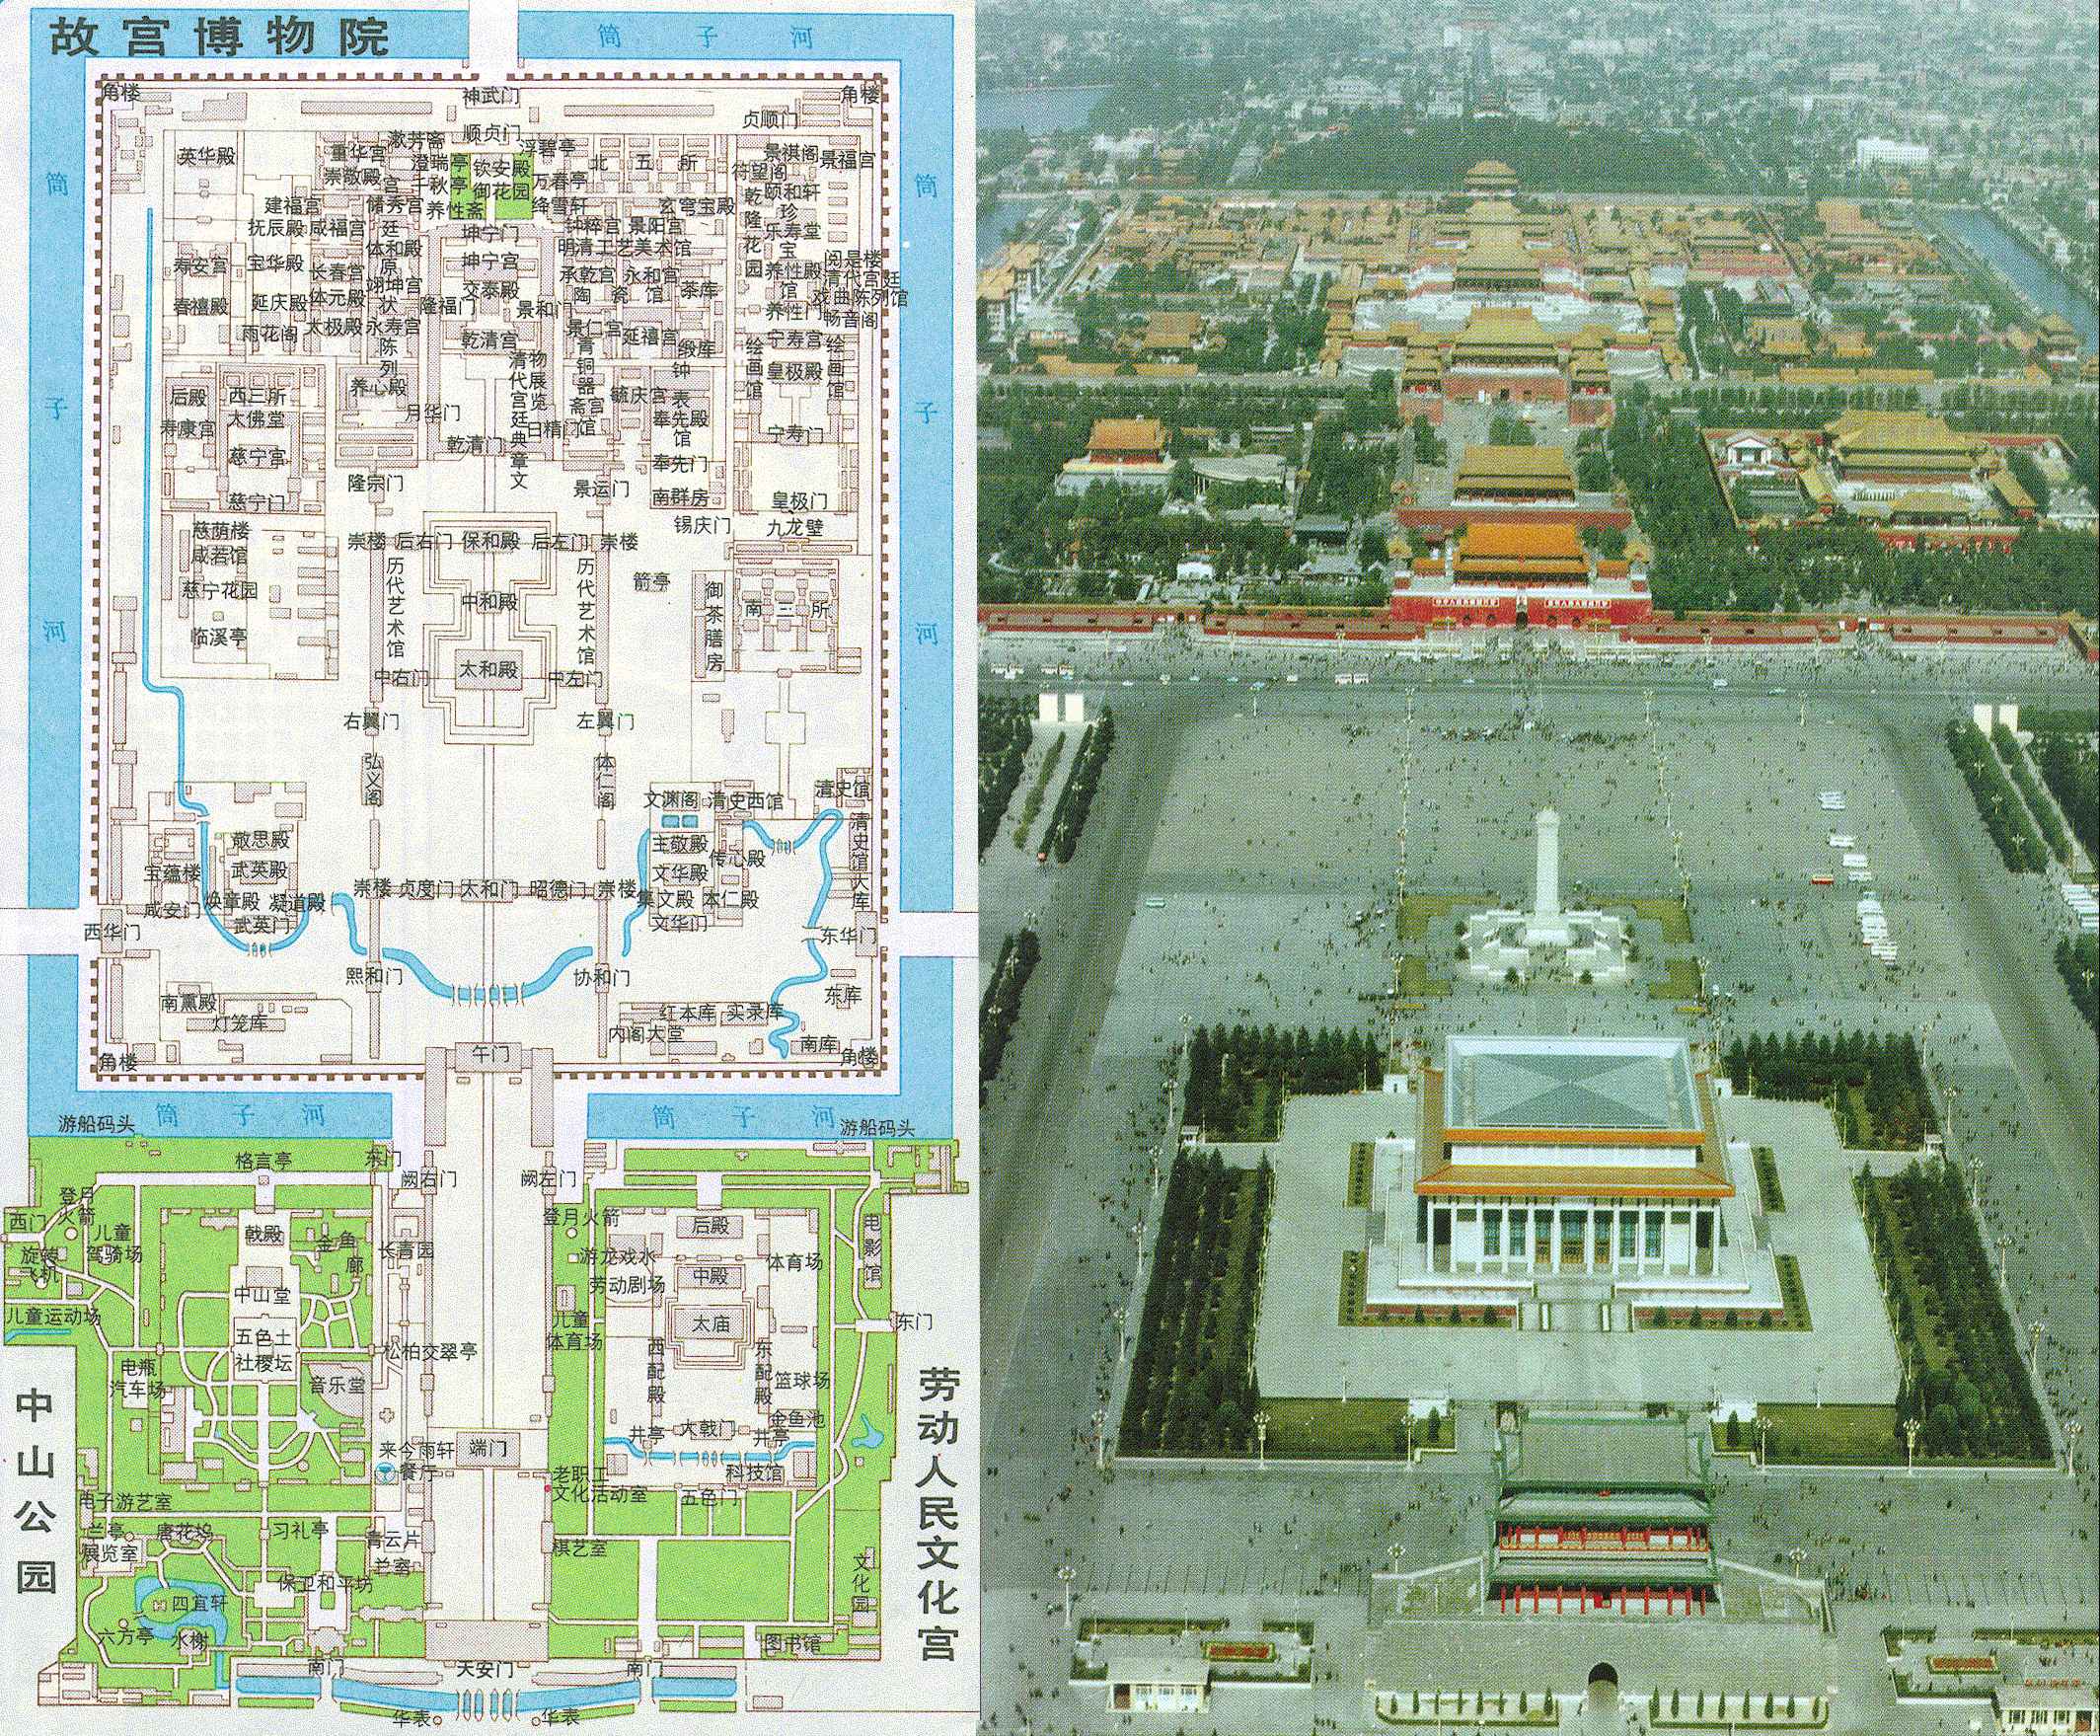 北京故宫旅游地图+平面图_北京地图查询